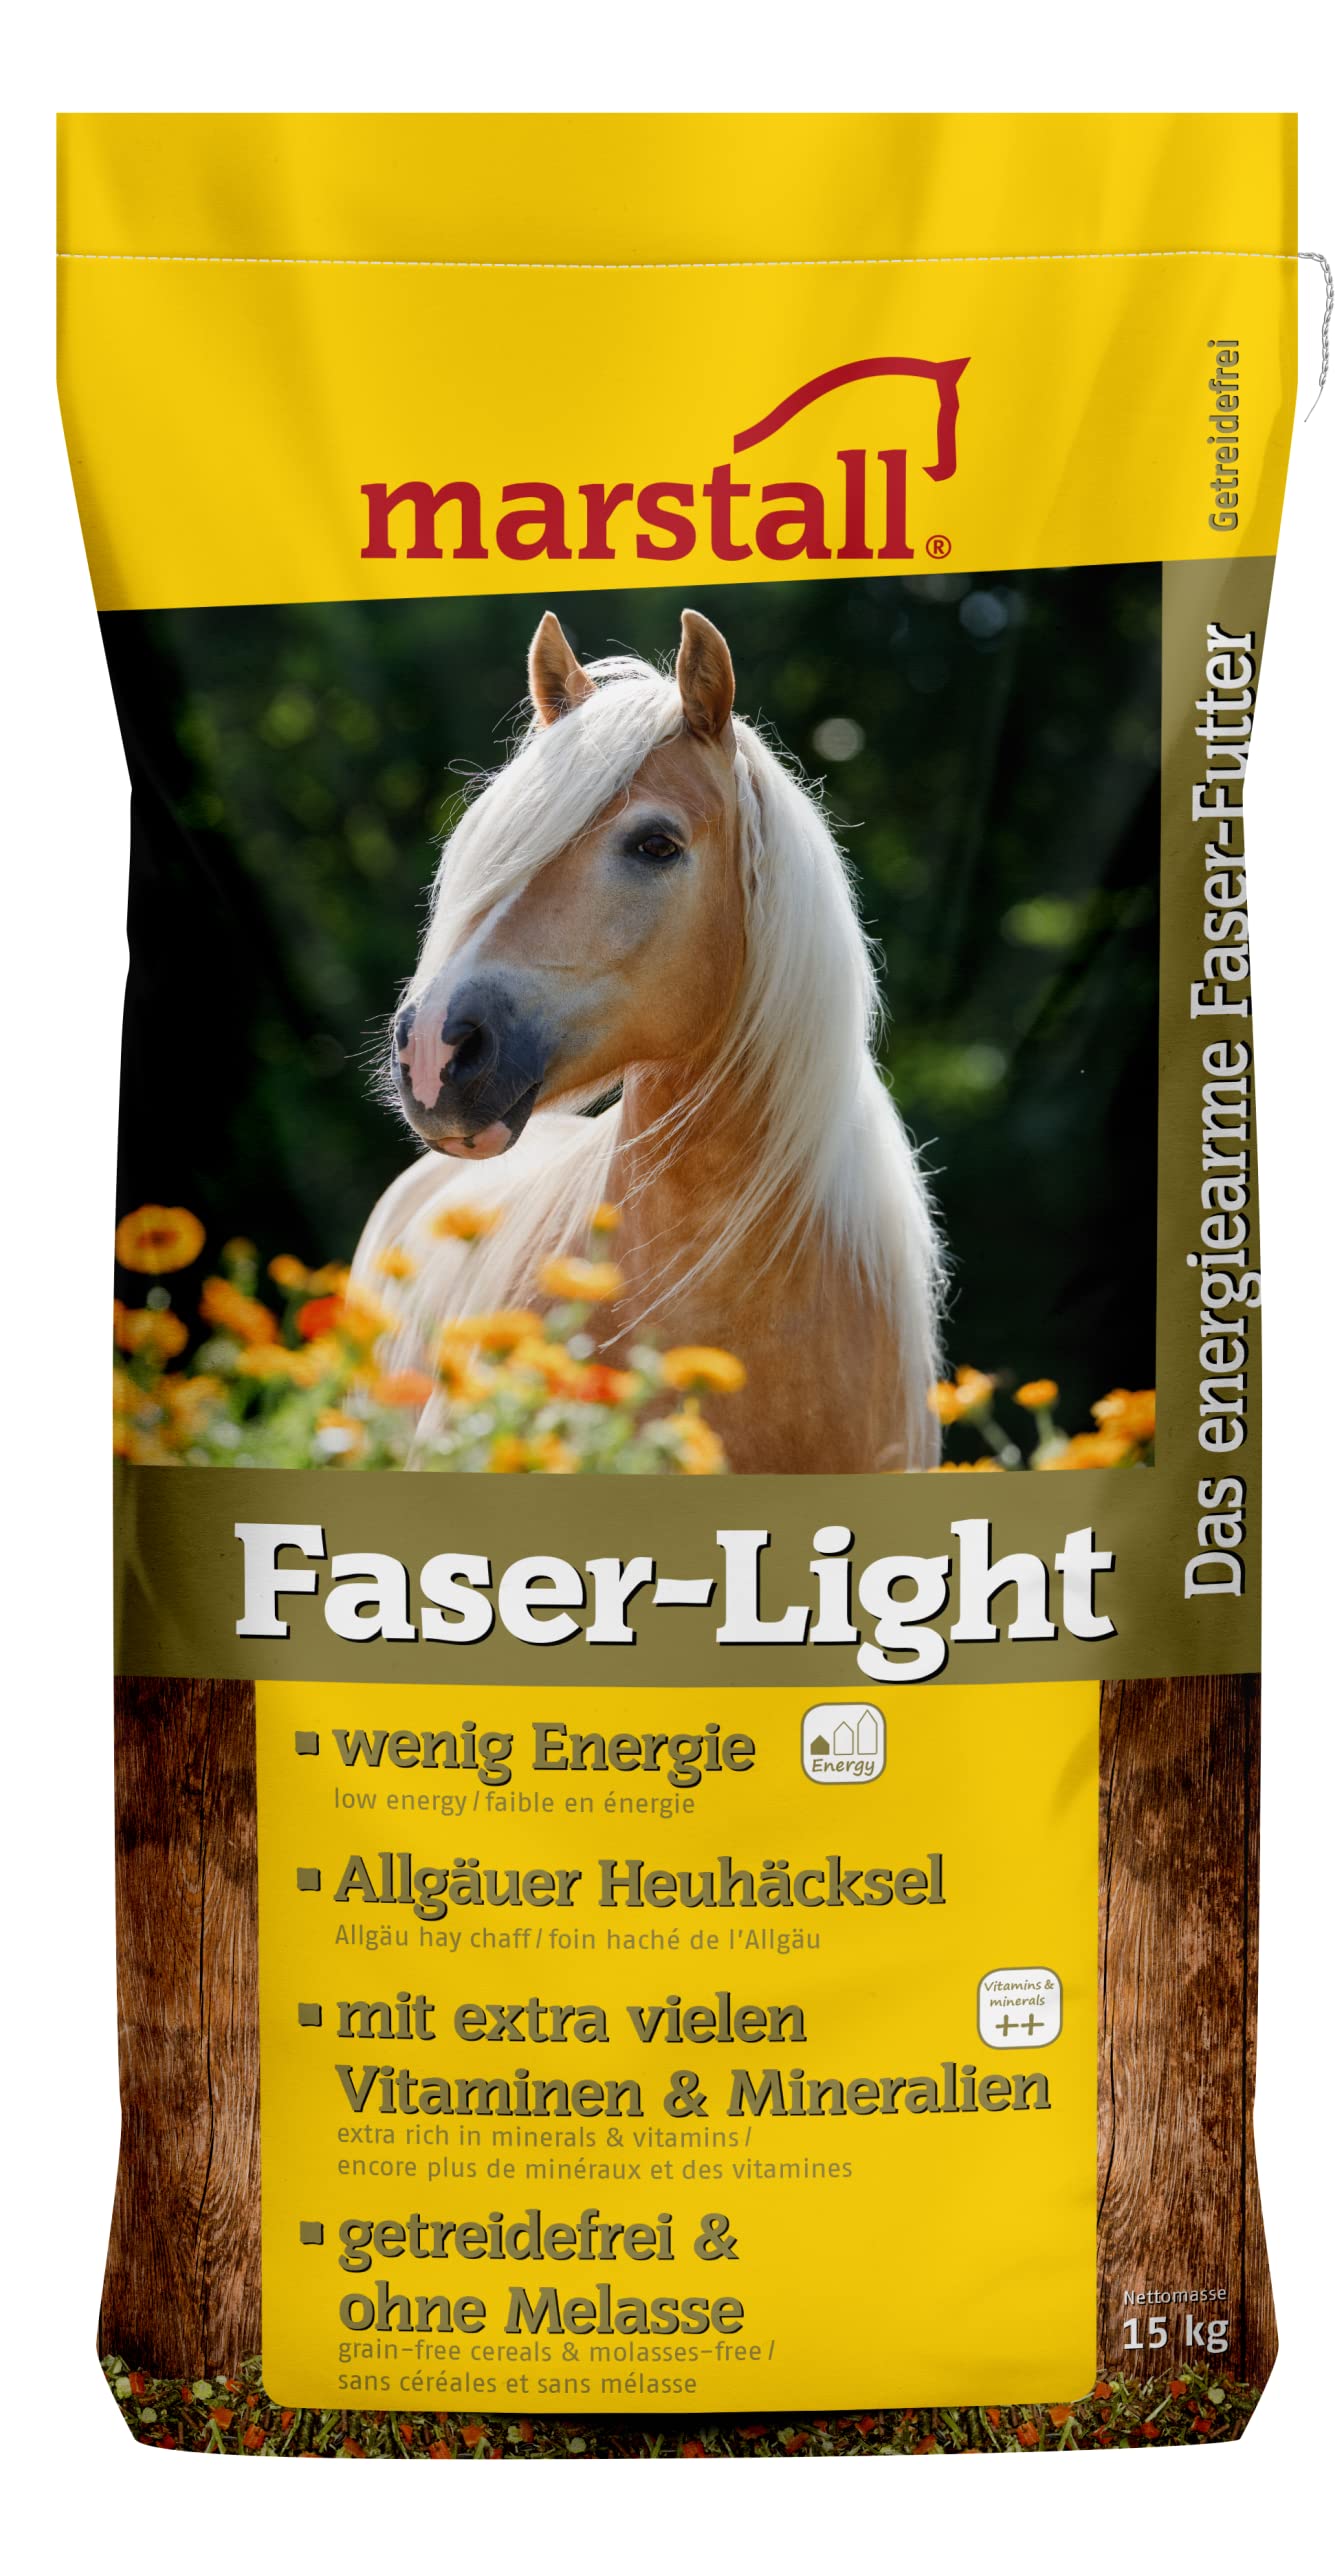 marstall Premium-Pferdefutter Faser-Light, 1er Pack (1 x 15 kilograms)